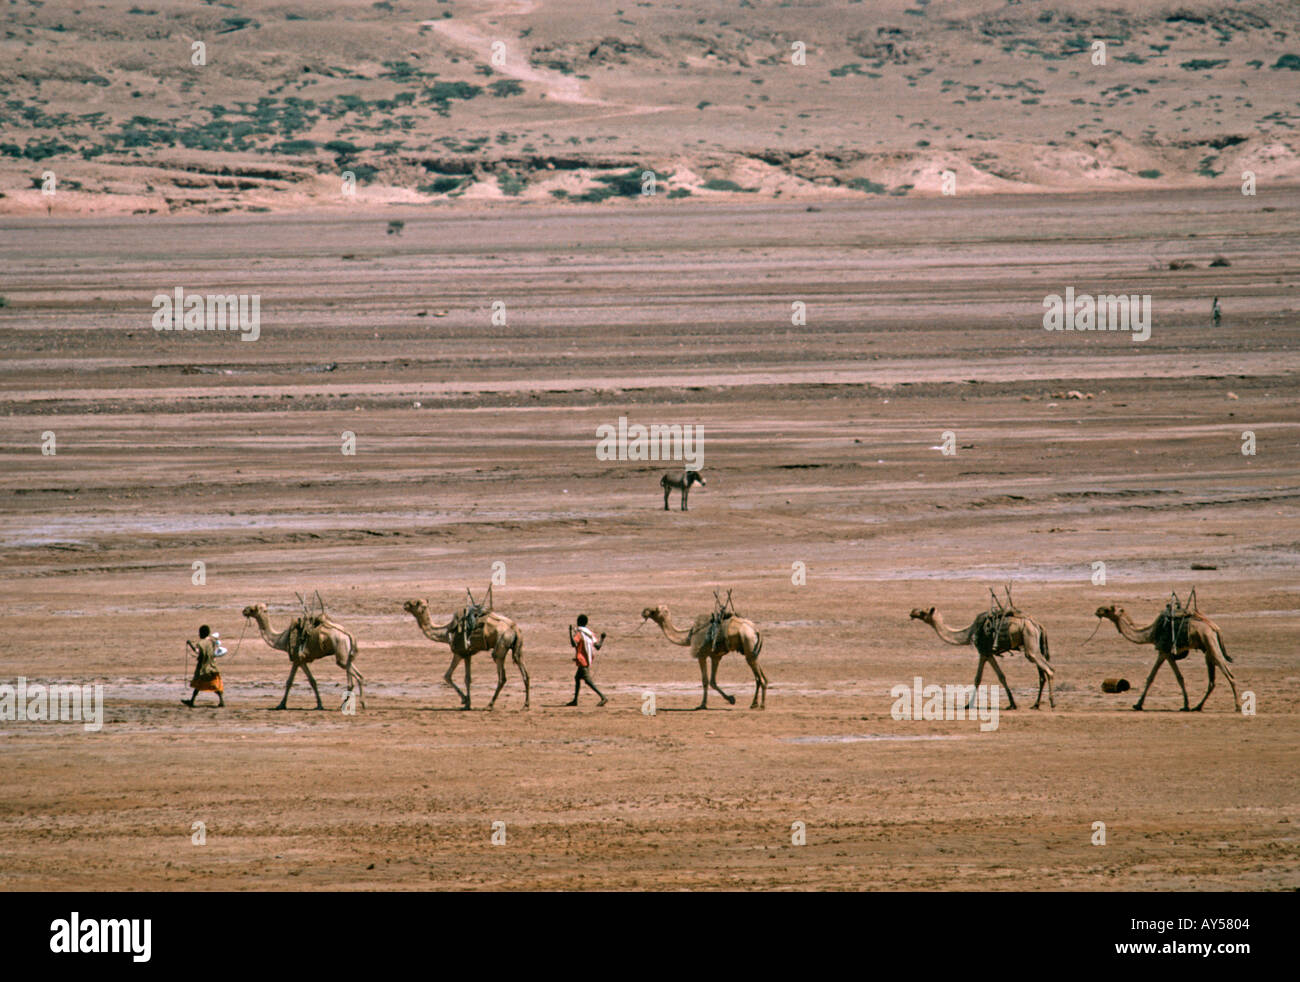 À Djibouti une famille avec des chameaux produit à travers un paysage désertique Banque D'Images